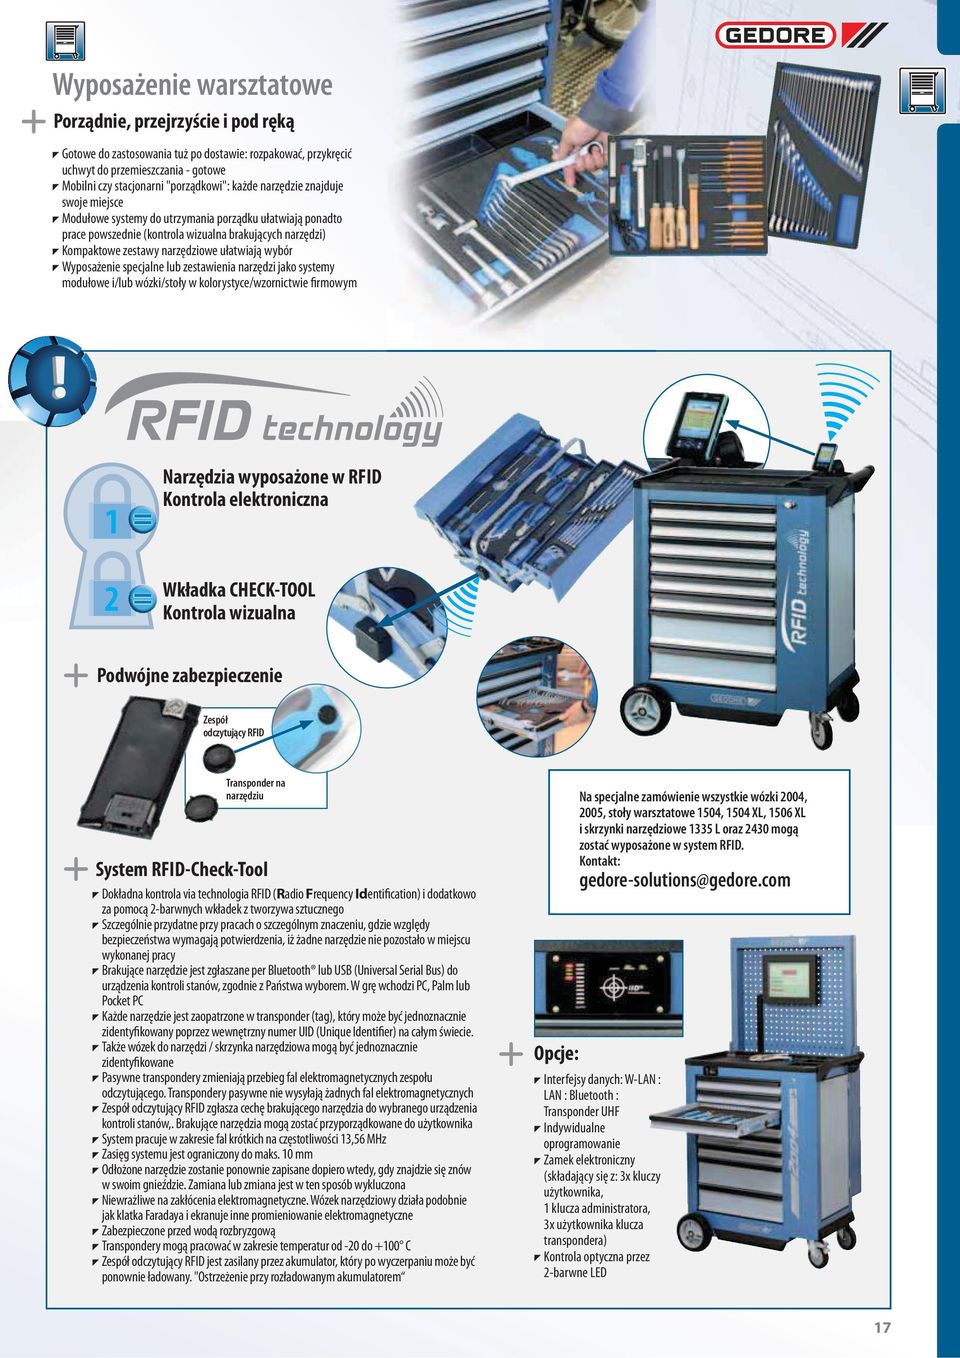 wybór T Wyposażenie specjalne lub zestawienia narzędzi jako systemy modułowe i/lub wózki/stoły w kolorystyce/wzornictwie firmowym 1 2 Narzędzia wyposażone w RFID Kontrola elektroniczna Wkładka